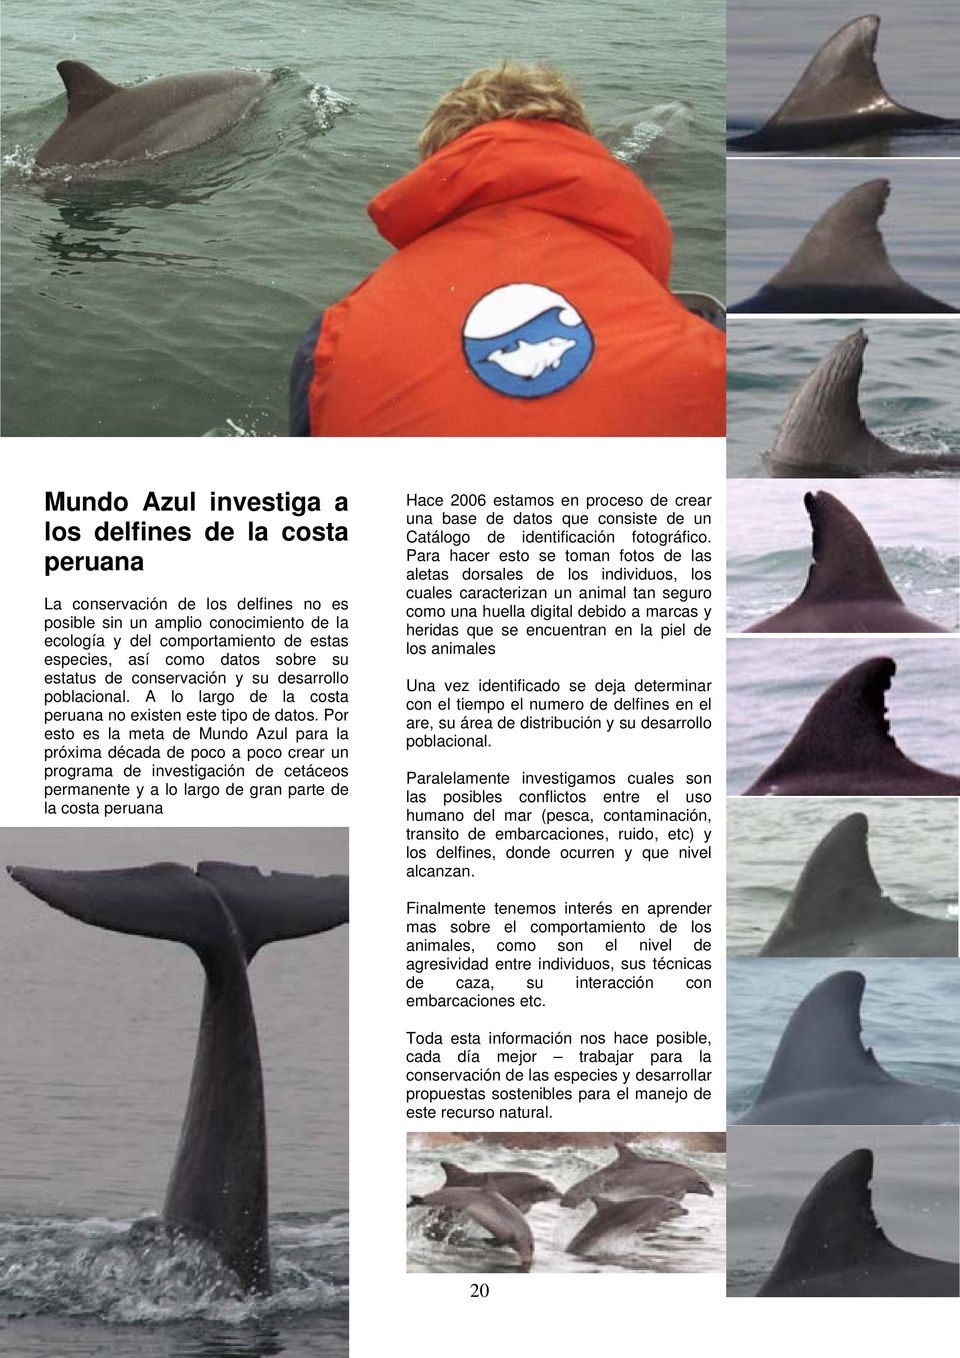 Por esto es la meta de Mundo Azul para la próxima década de poco a poco crear un programa de investigación de cetáceos permanente y a lo largo de gran parte de la costa peruana Hace 2006 estamos en